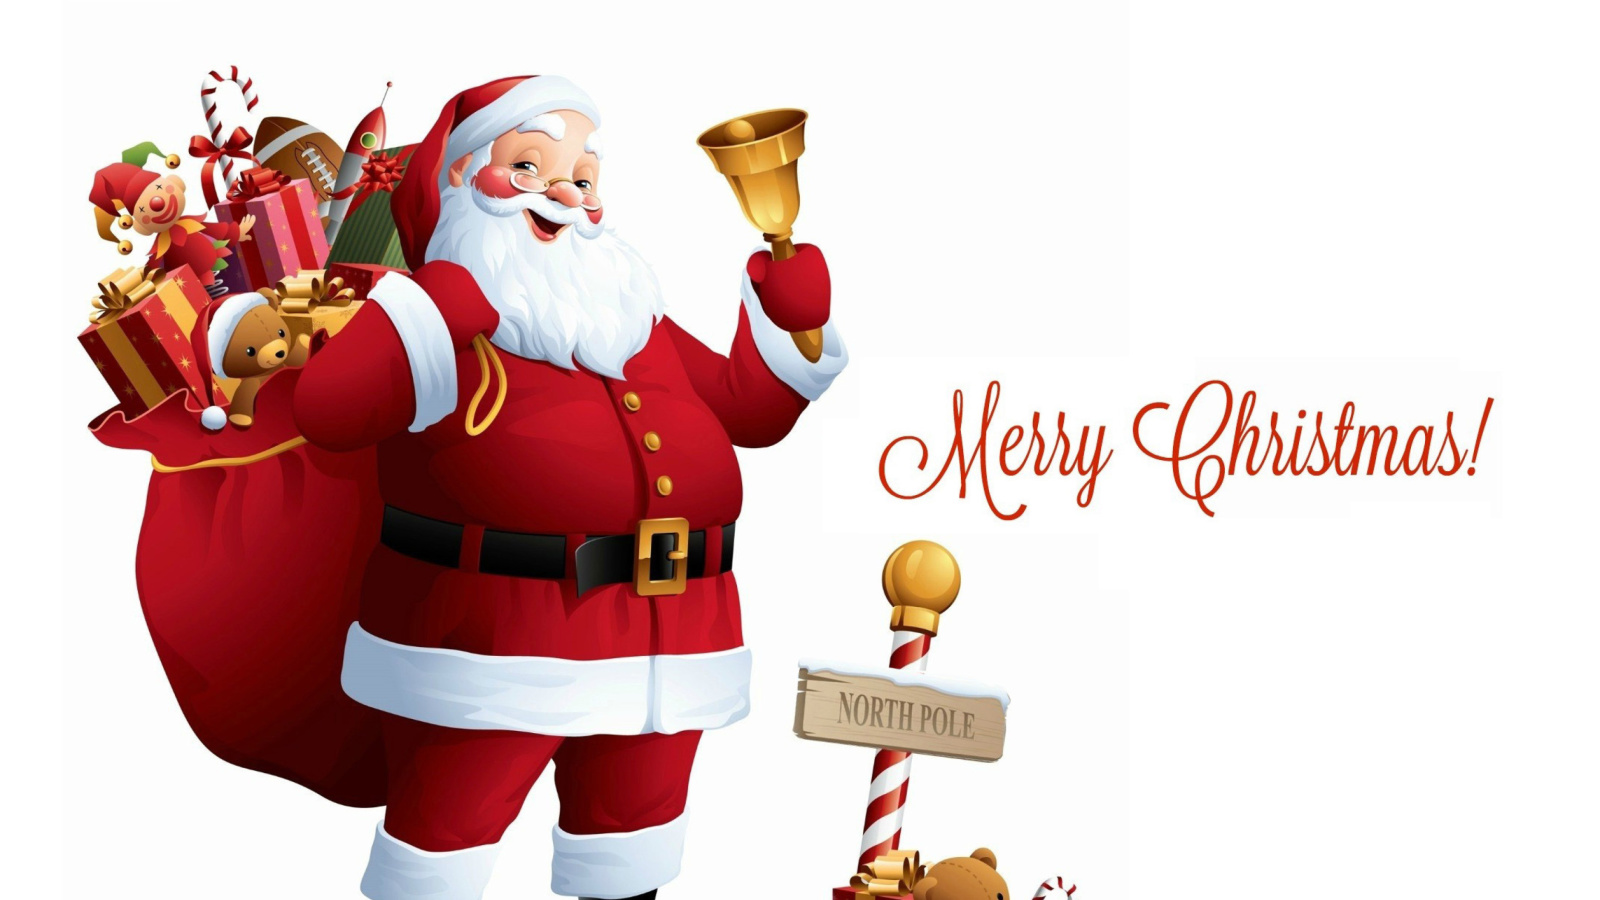 HO HO HO Merry Christmas Santa Claus wallpaper 1600x900